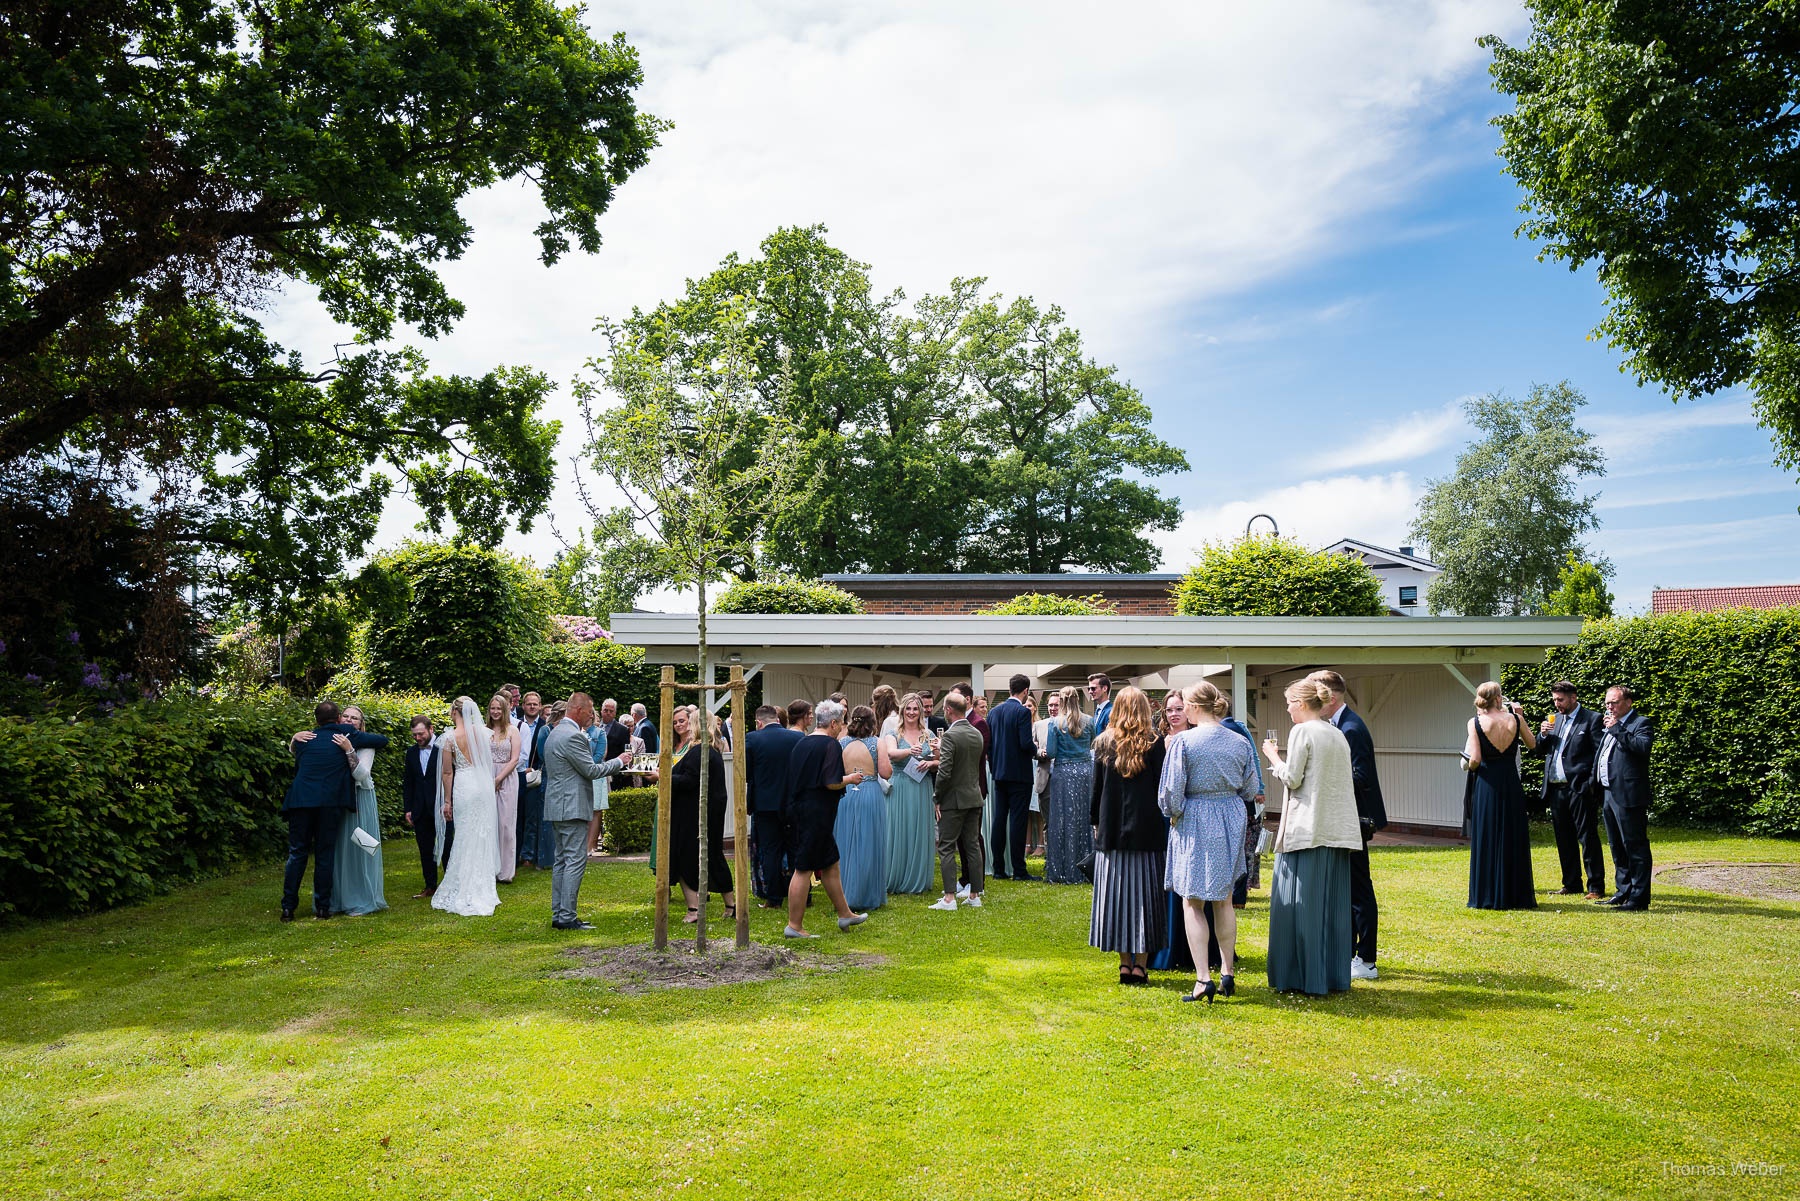 Hochzeitsempfang nach der kirchlichen Trauung in Rastede, Thomas Weber, Hochzeitsfotograf